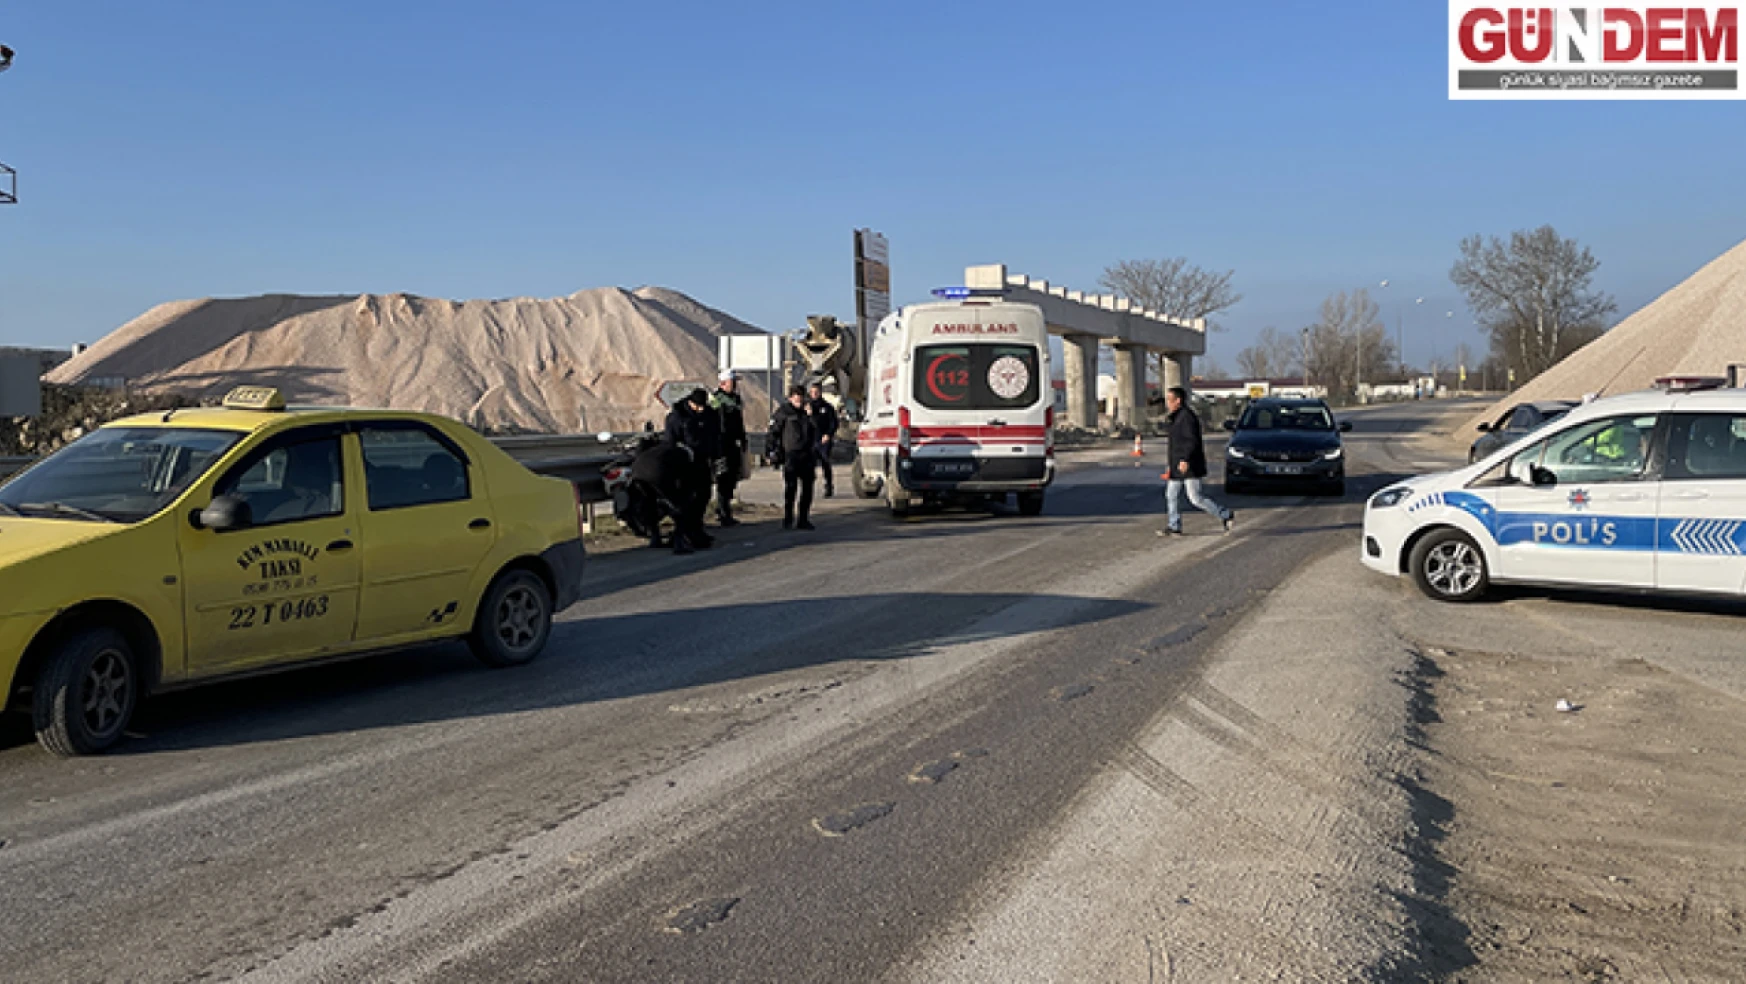 Edirne'de devrilen motosikletteki yolcu yaralandı